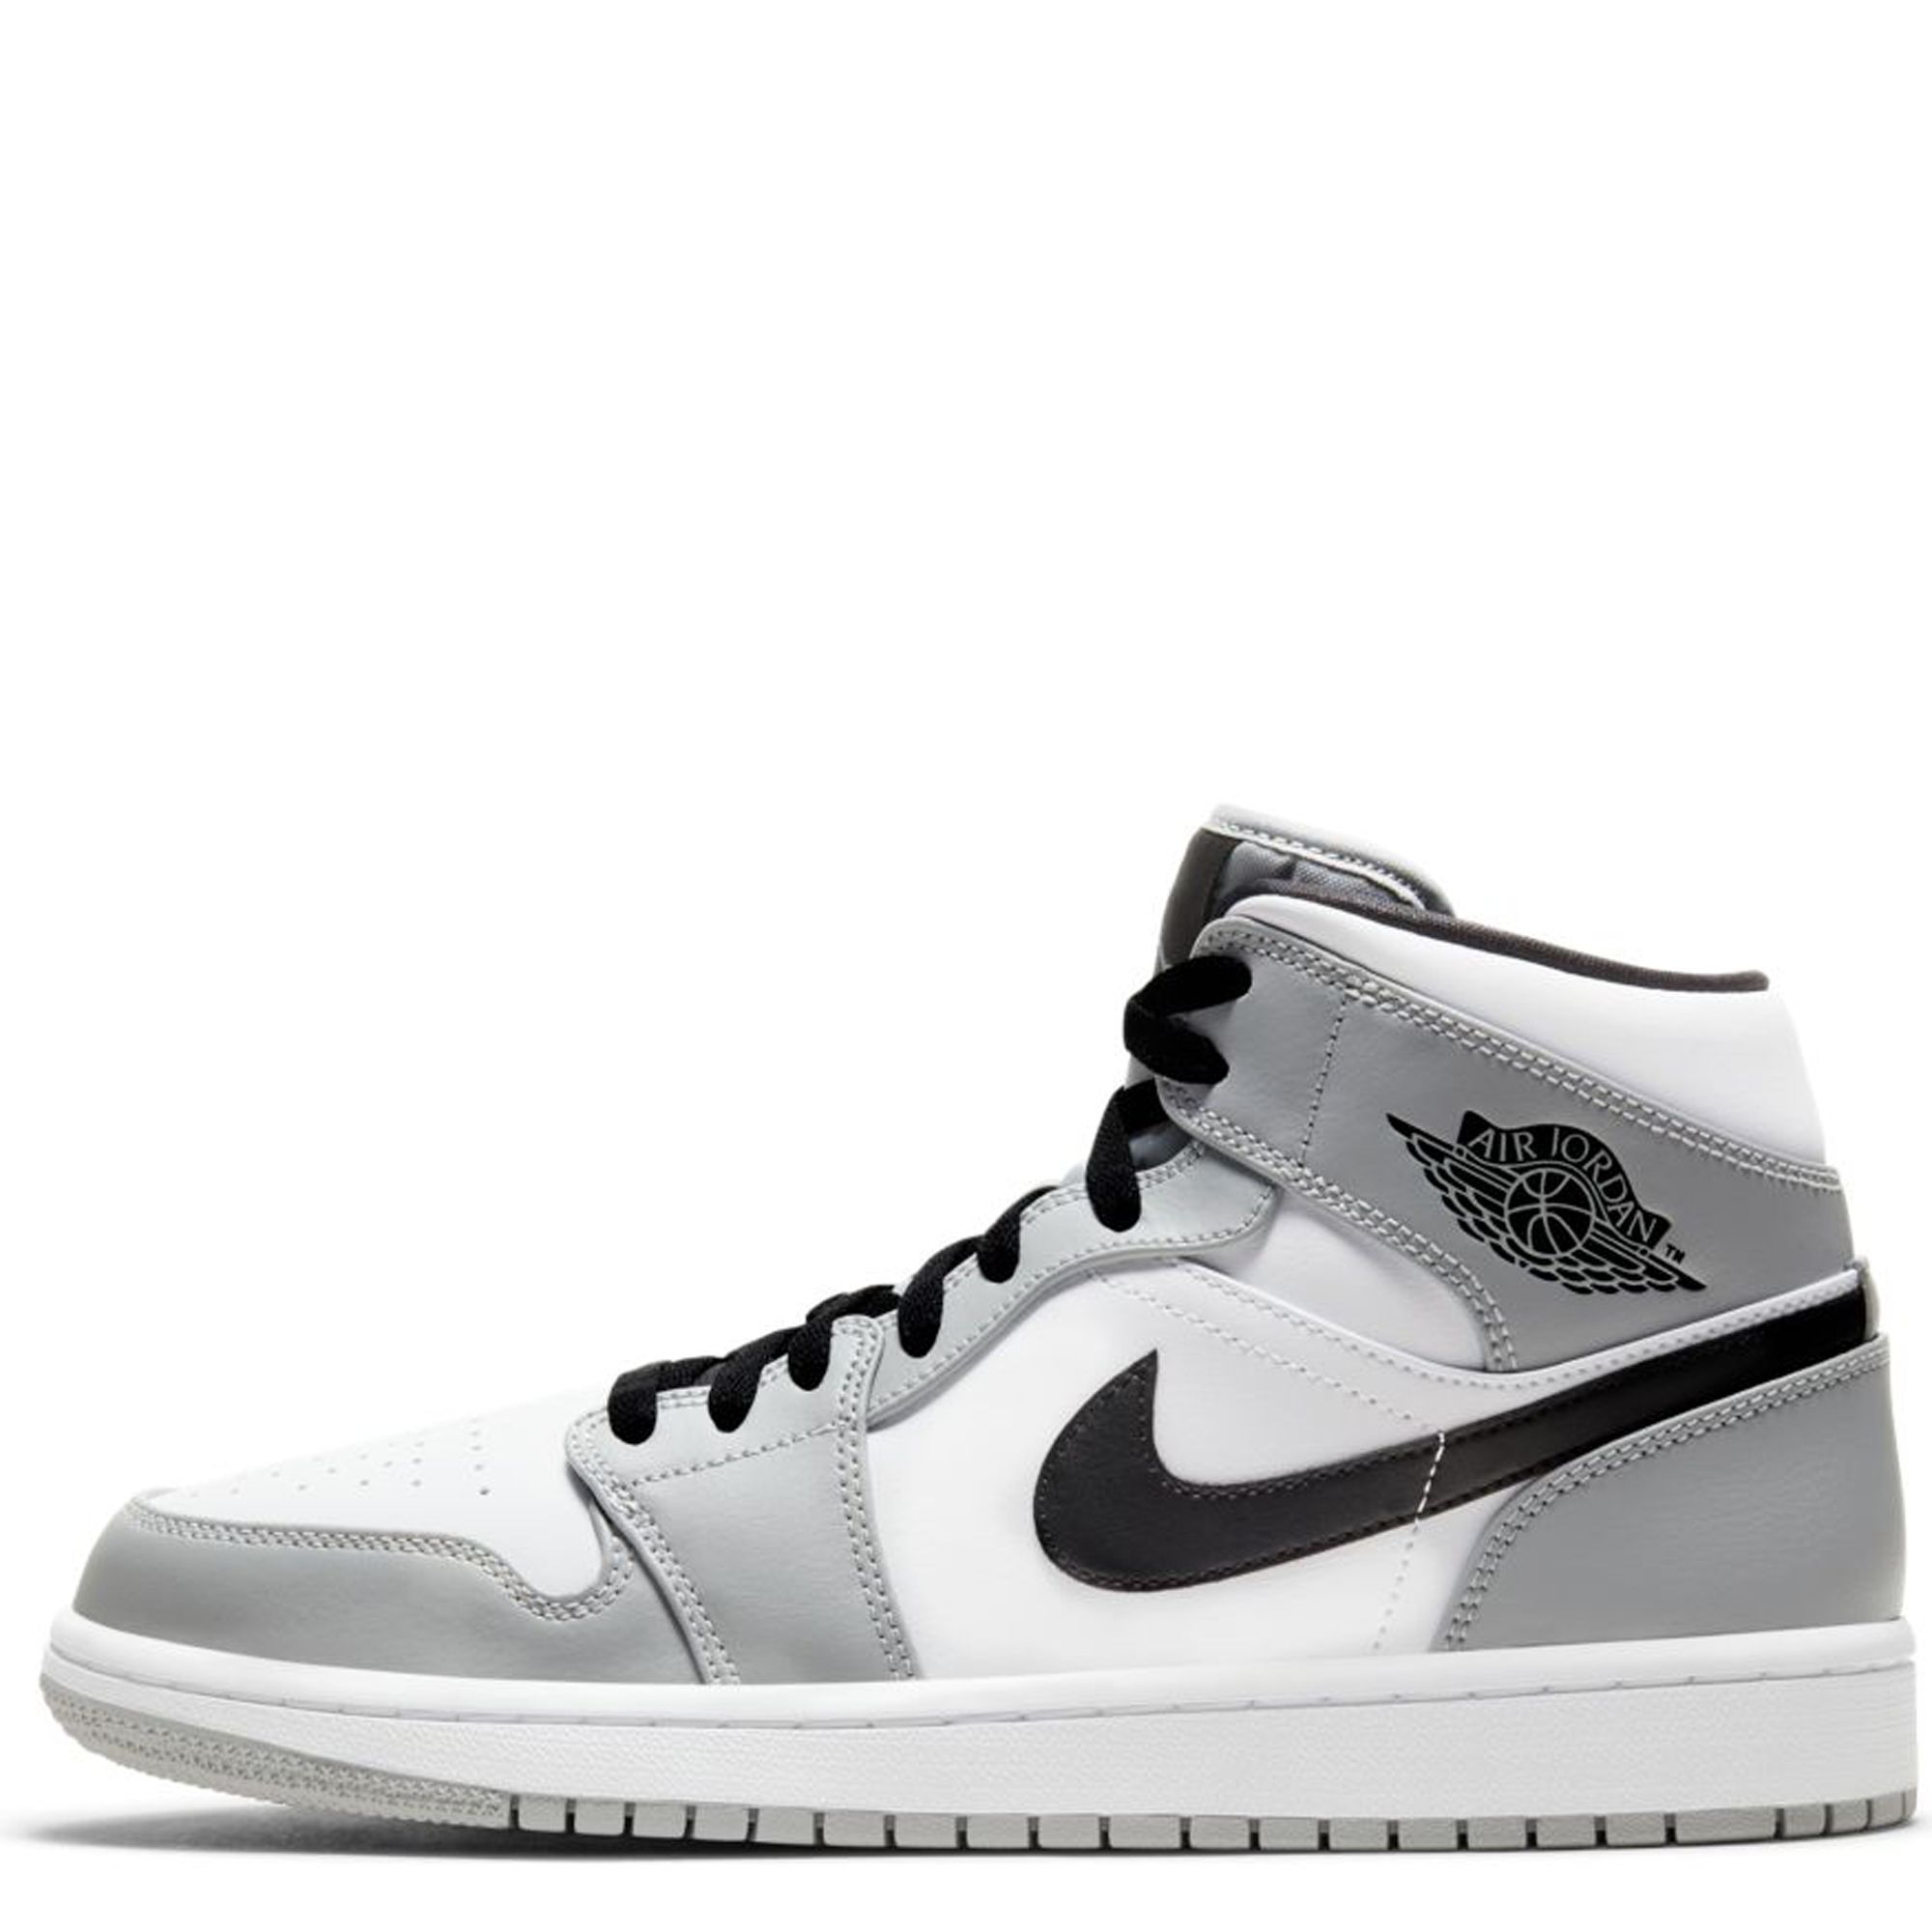 Jordan Air Jordan 1 sneakers - White